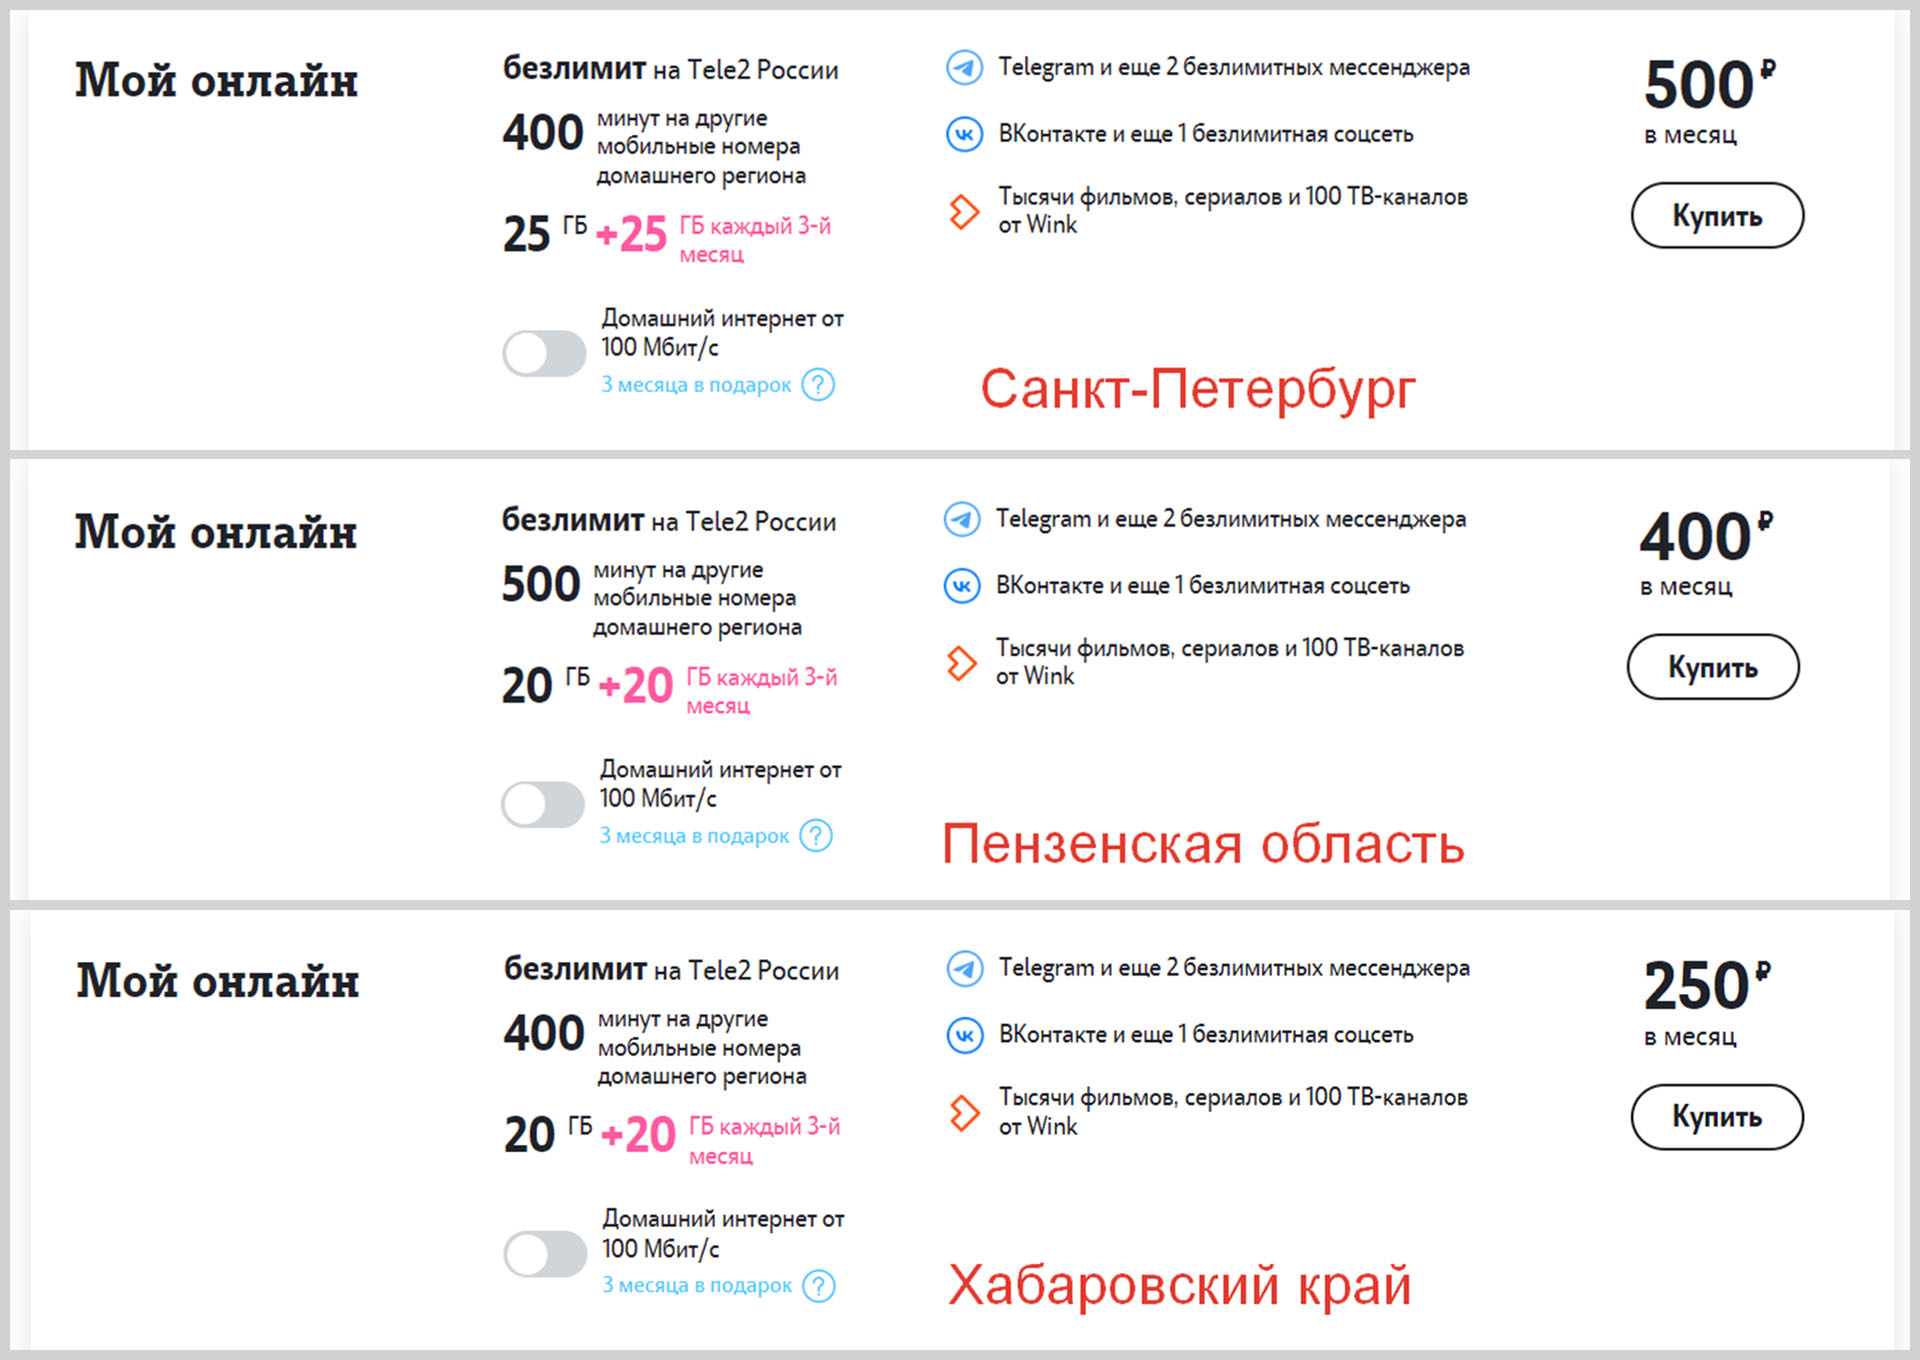 Примеры тарифа «Мой онлайн» оператора Теле2 в разных регионах страны.